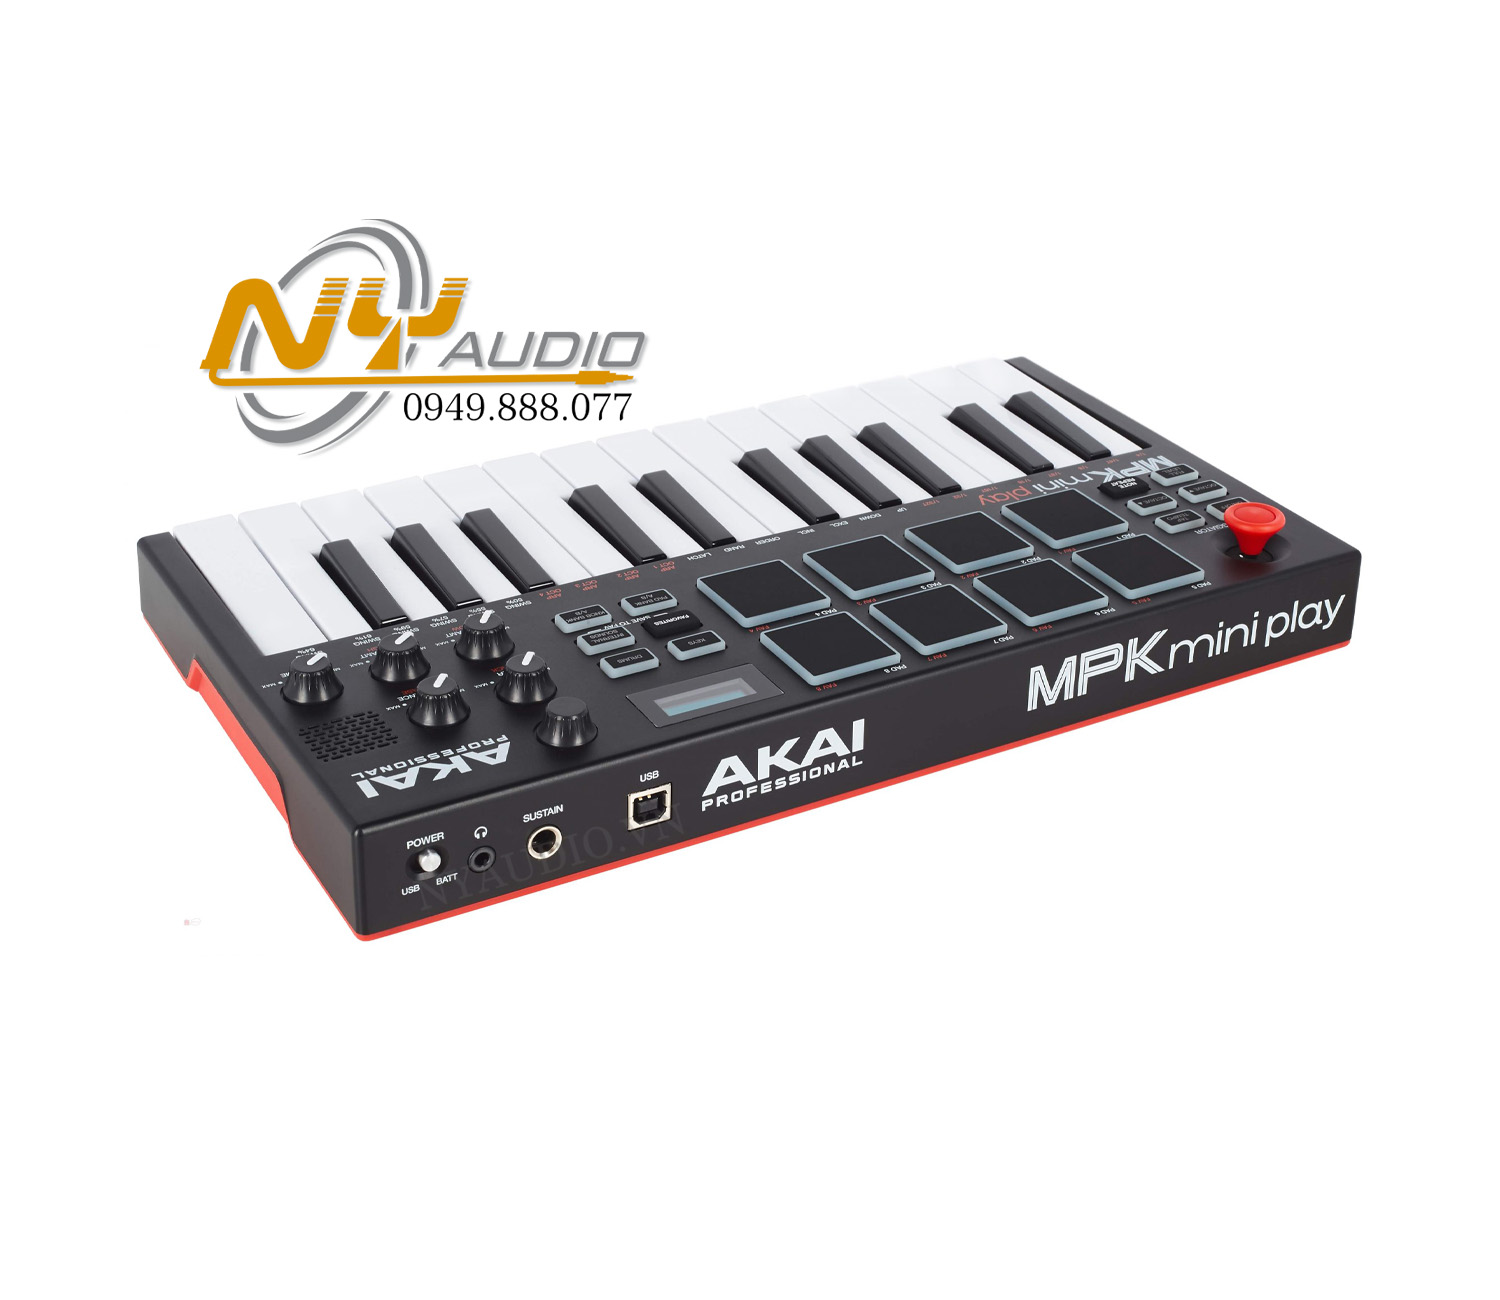 Akai Mini Play MIDI Controller hàng nhập khẩu chính hãng